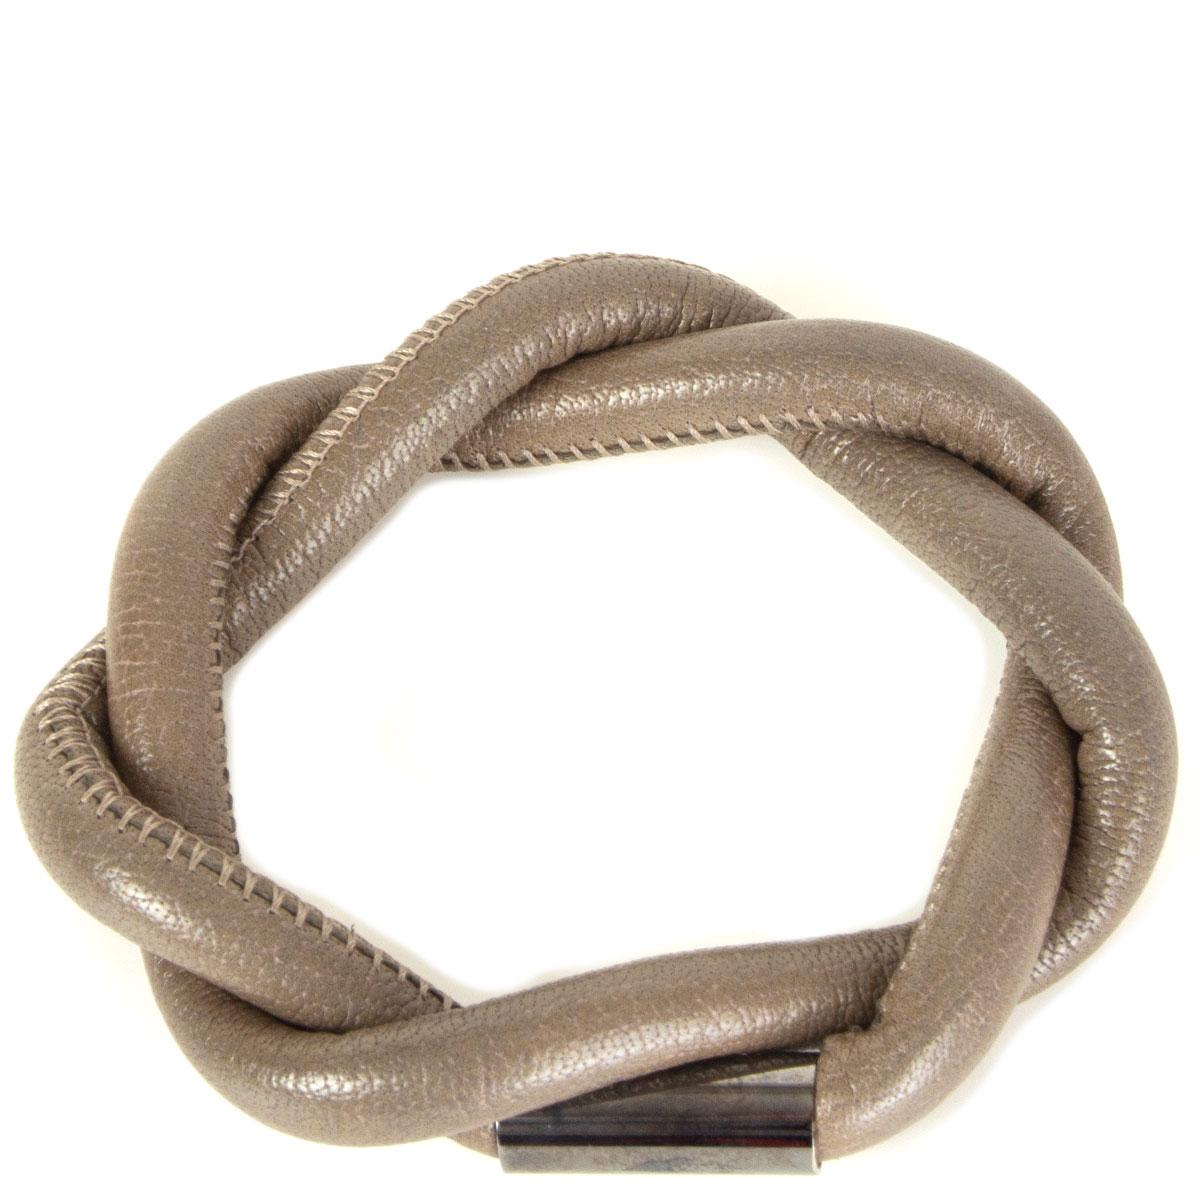 Authentique bracelet en cuir tressé taupe de Burberry. A été porté et est en excellent état.

Circonférence18.5cm (7.2in)